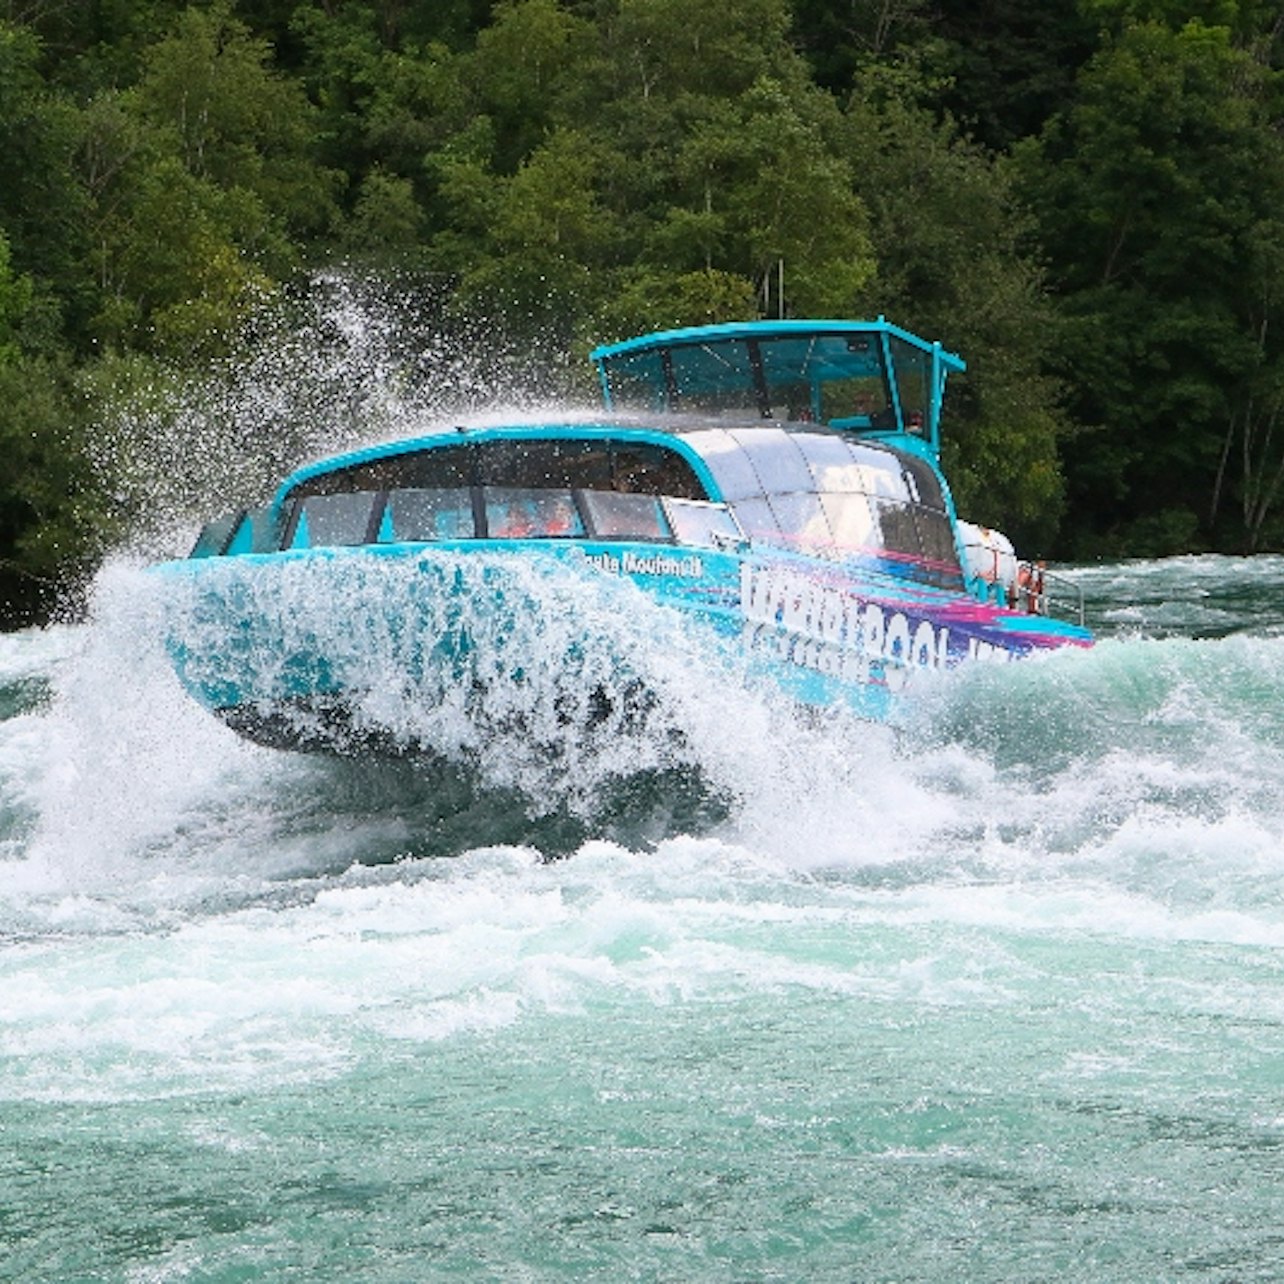 Whirlpool Jet Boat Tours en Niagara Falls - Alojamientos en Cataratas del Niágara